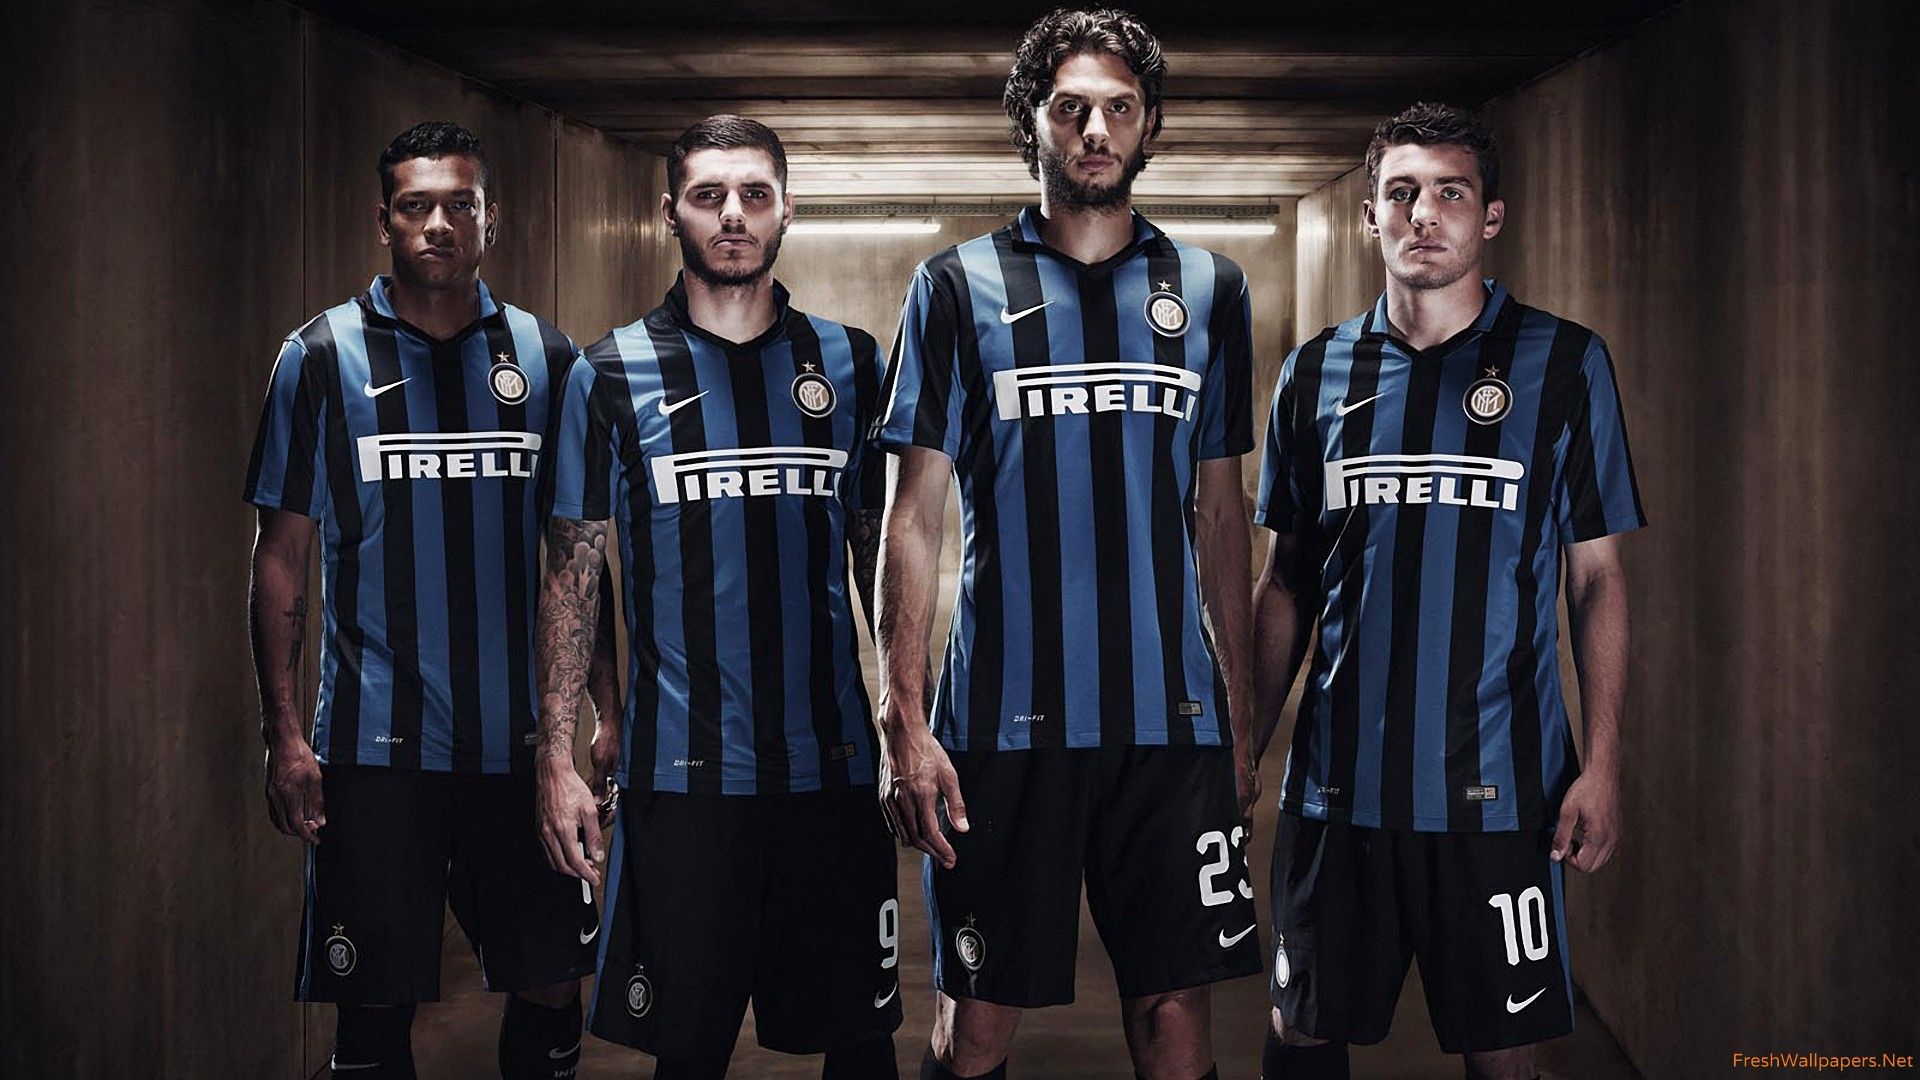 Inter Milan 2015-2016 Home Kit wallpapers | Freshwallpapers